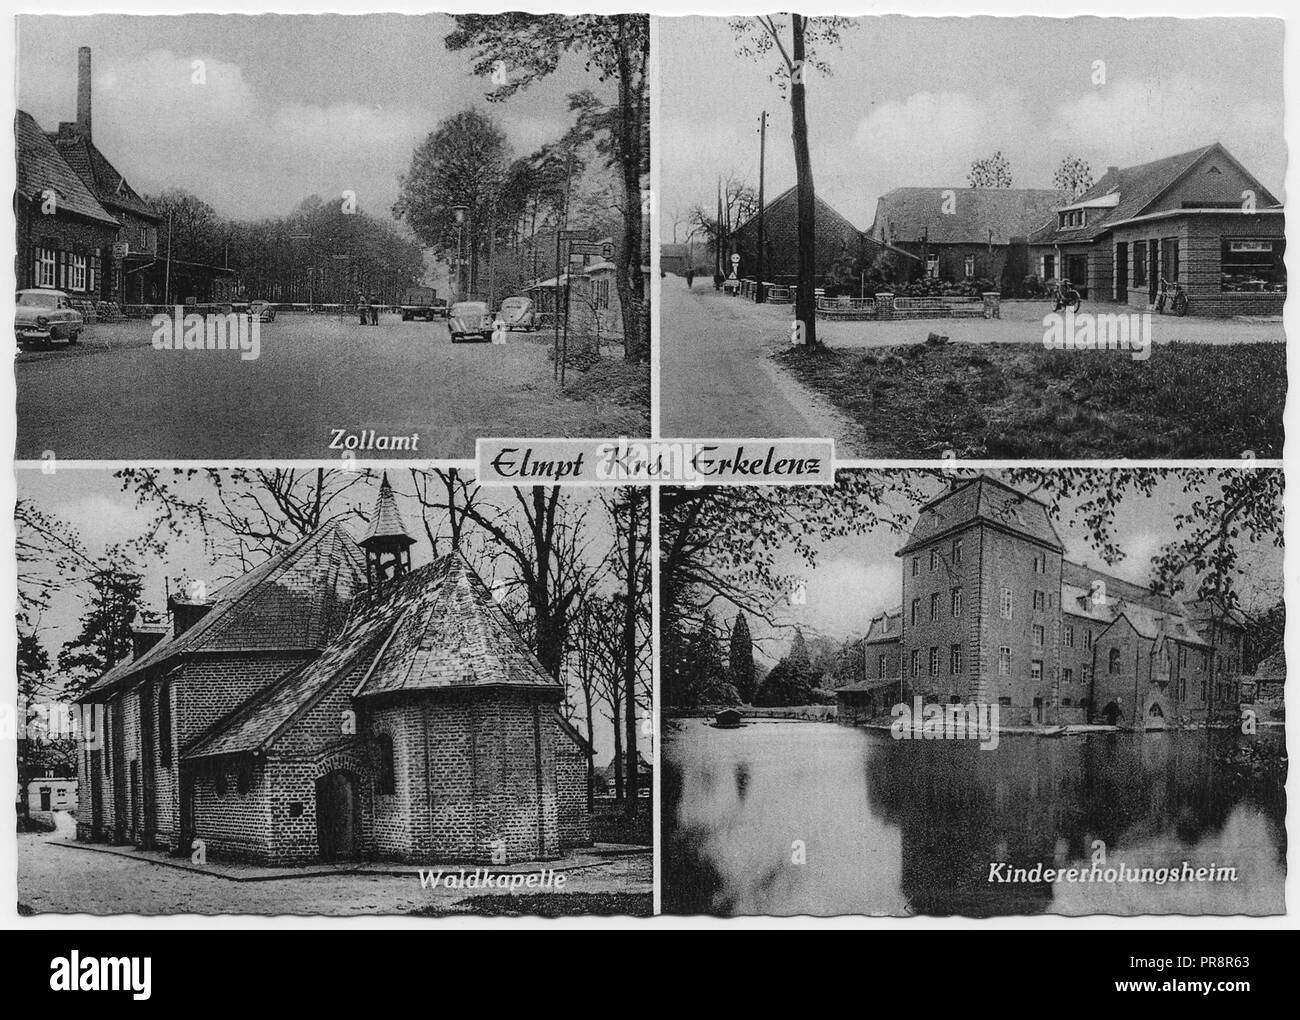 Eine Postkarte aus Elmpt eine Stadt in der Gemeinde Niederkrüchten im Kreis Viersen, Nordrhein-Westfalen, Deutschland Baujahr 1962. Mit dem kindererholungsheim, Zollamt und Waldkapelle. Stockfoto